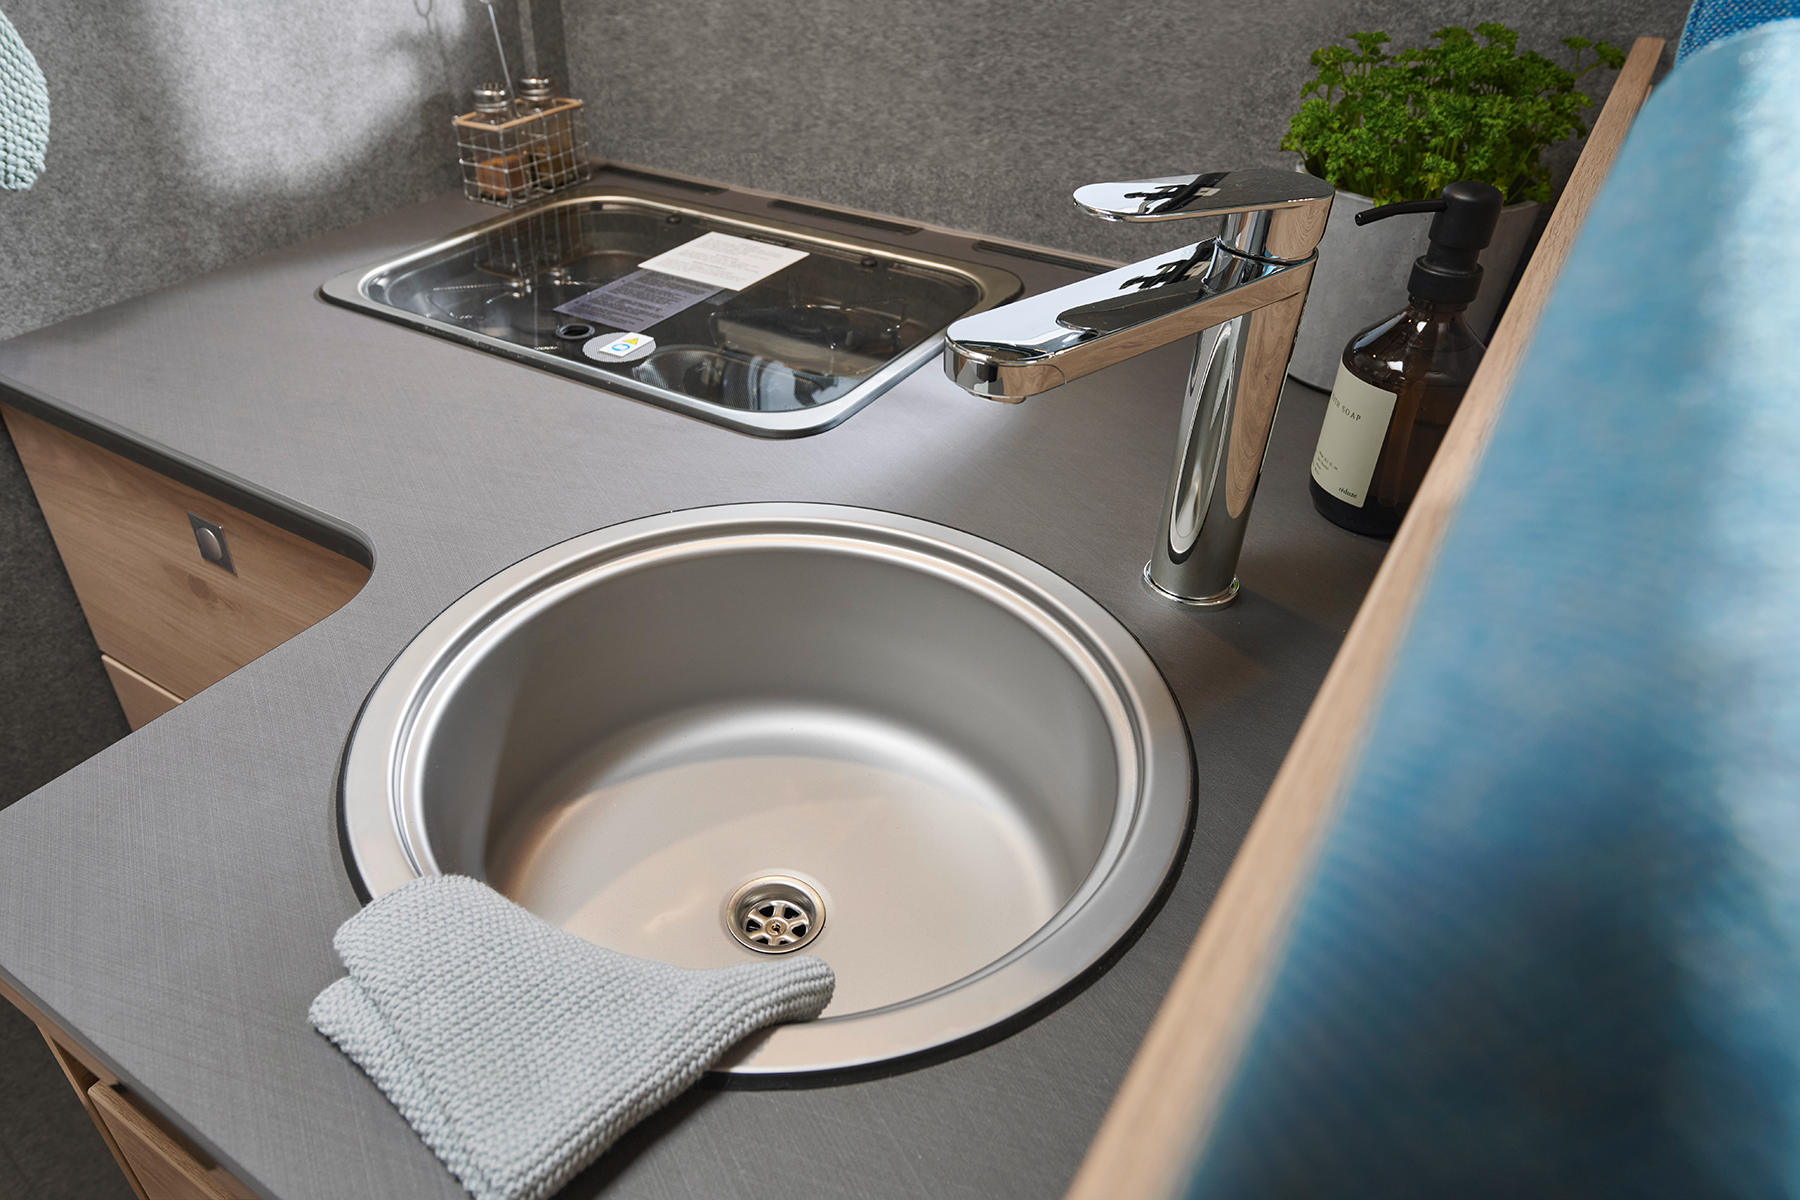 I den store køkkenvask kan selv store gryder og pander vaskes op takket være den høje vandhane.